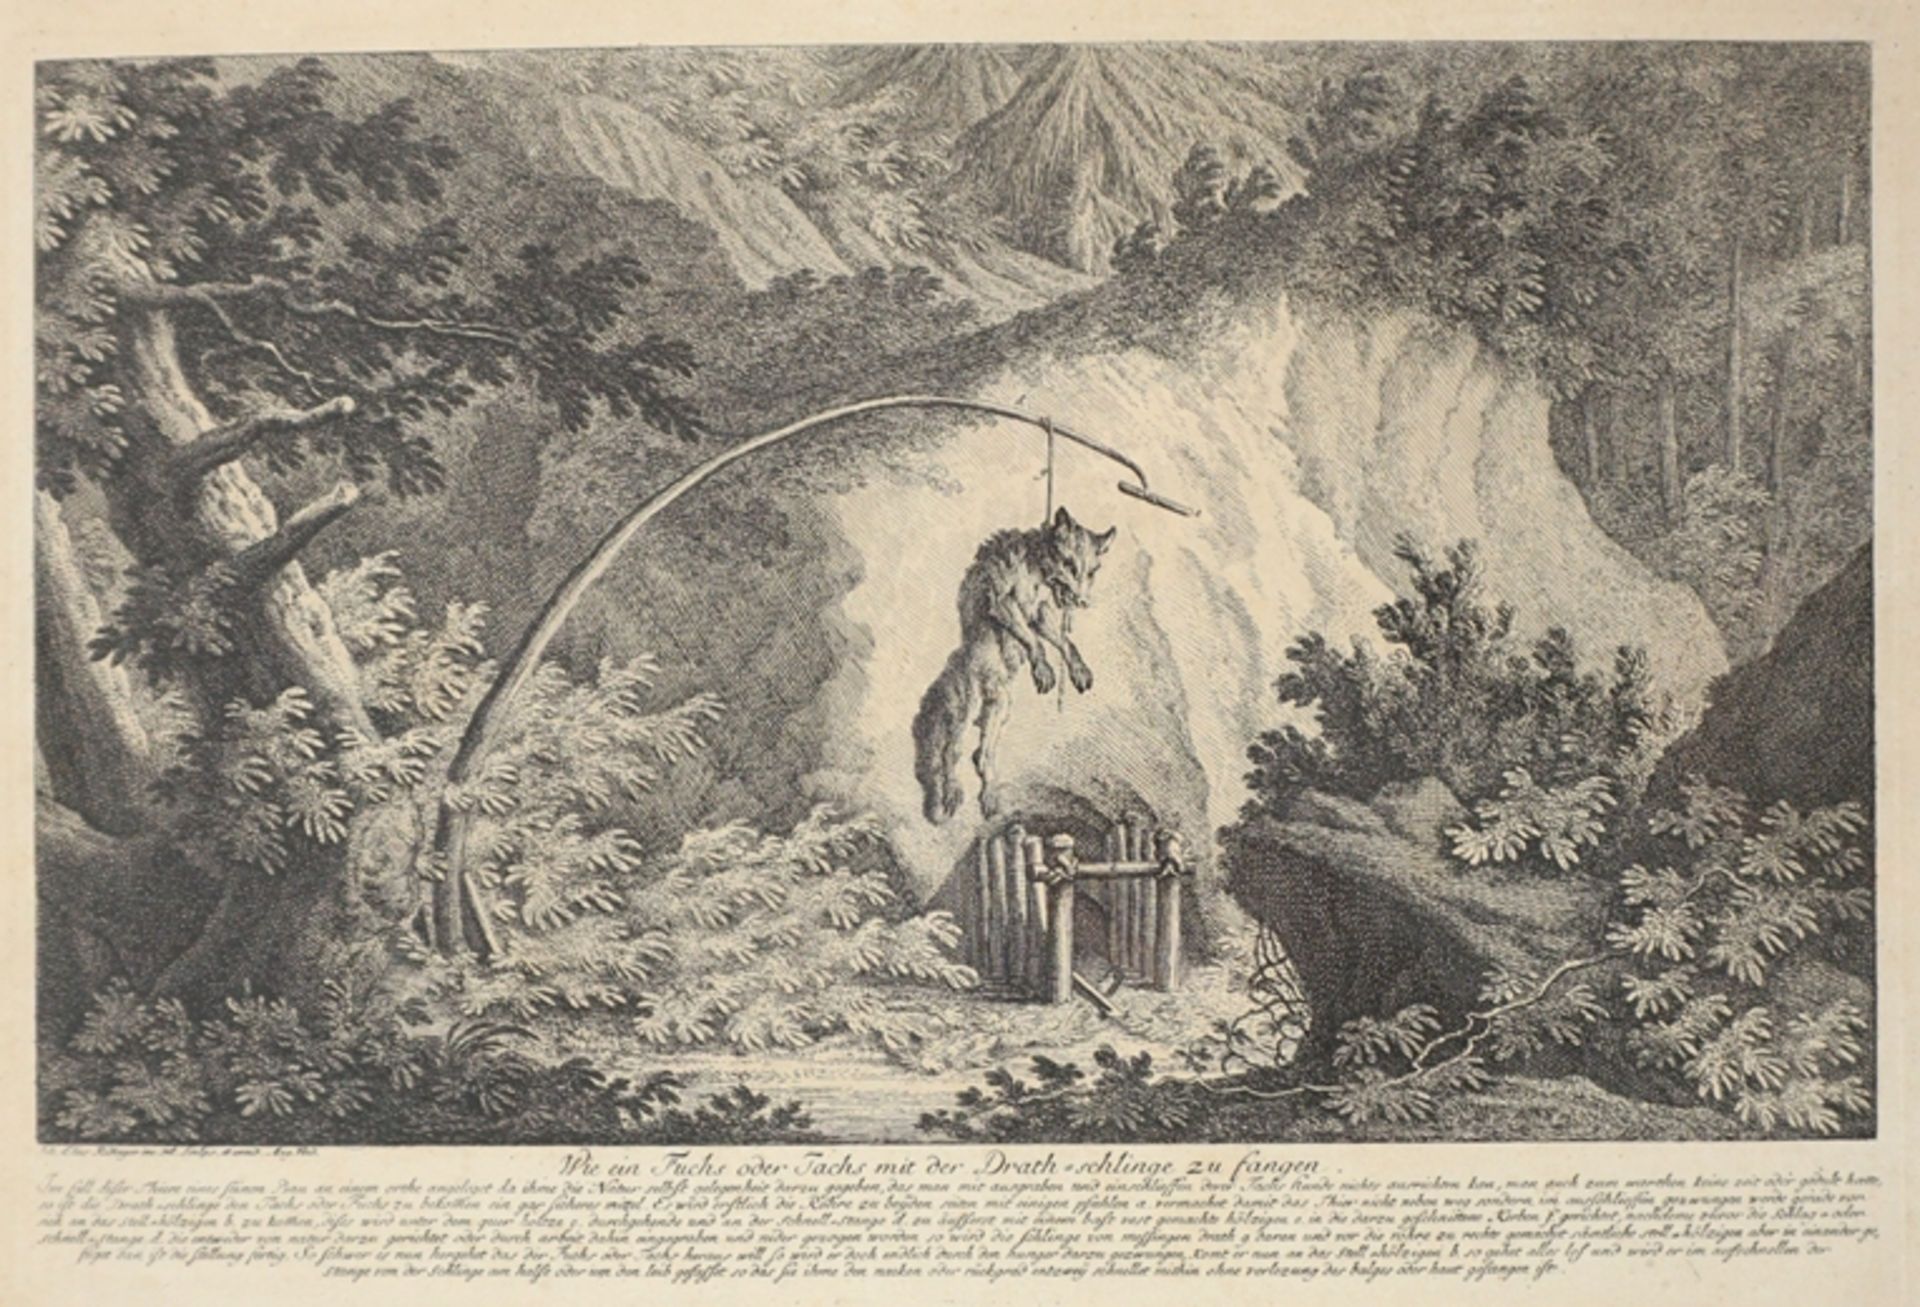 Johann Elias Ridinger (1698 Ulm - 1767 Augsburg), "Wie ein Fuchs oder Tachs mit der Drath-schlinge 